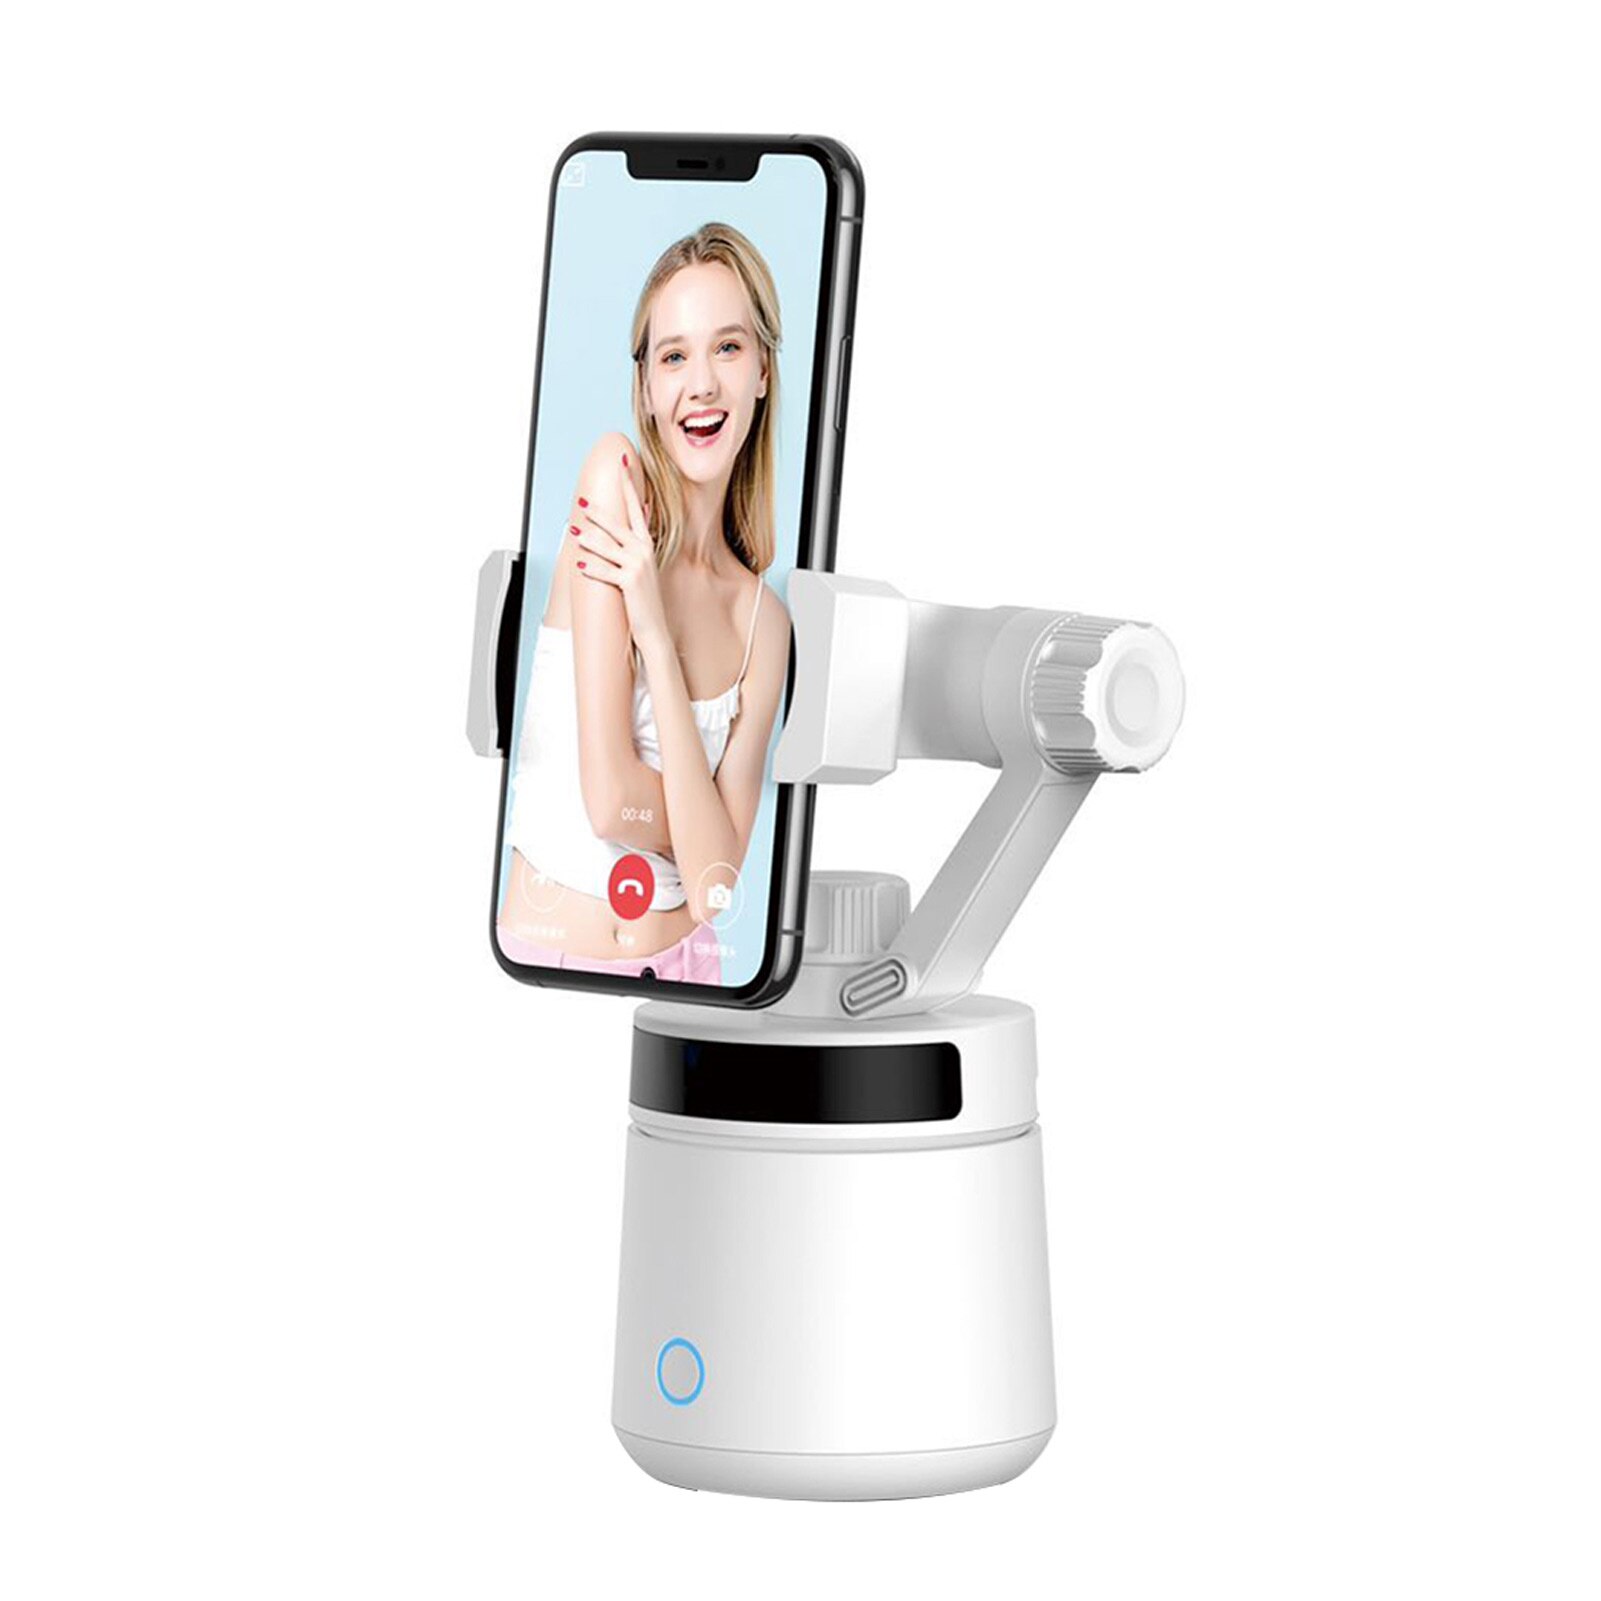 360 grad Drehen Multifunktions Schreibtisch Smartphone Halterung Einfach Installieren Clever Selfie Stock Auto Gesicht Einstellbare Geschwindigkeit